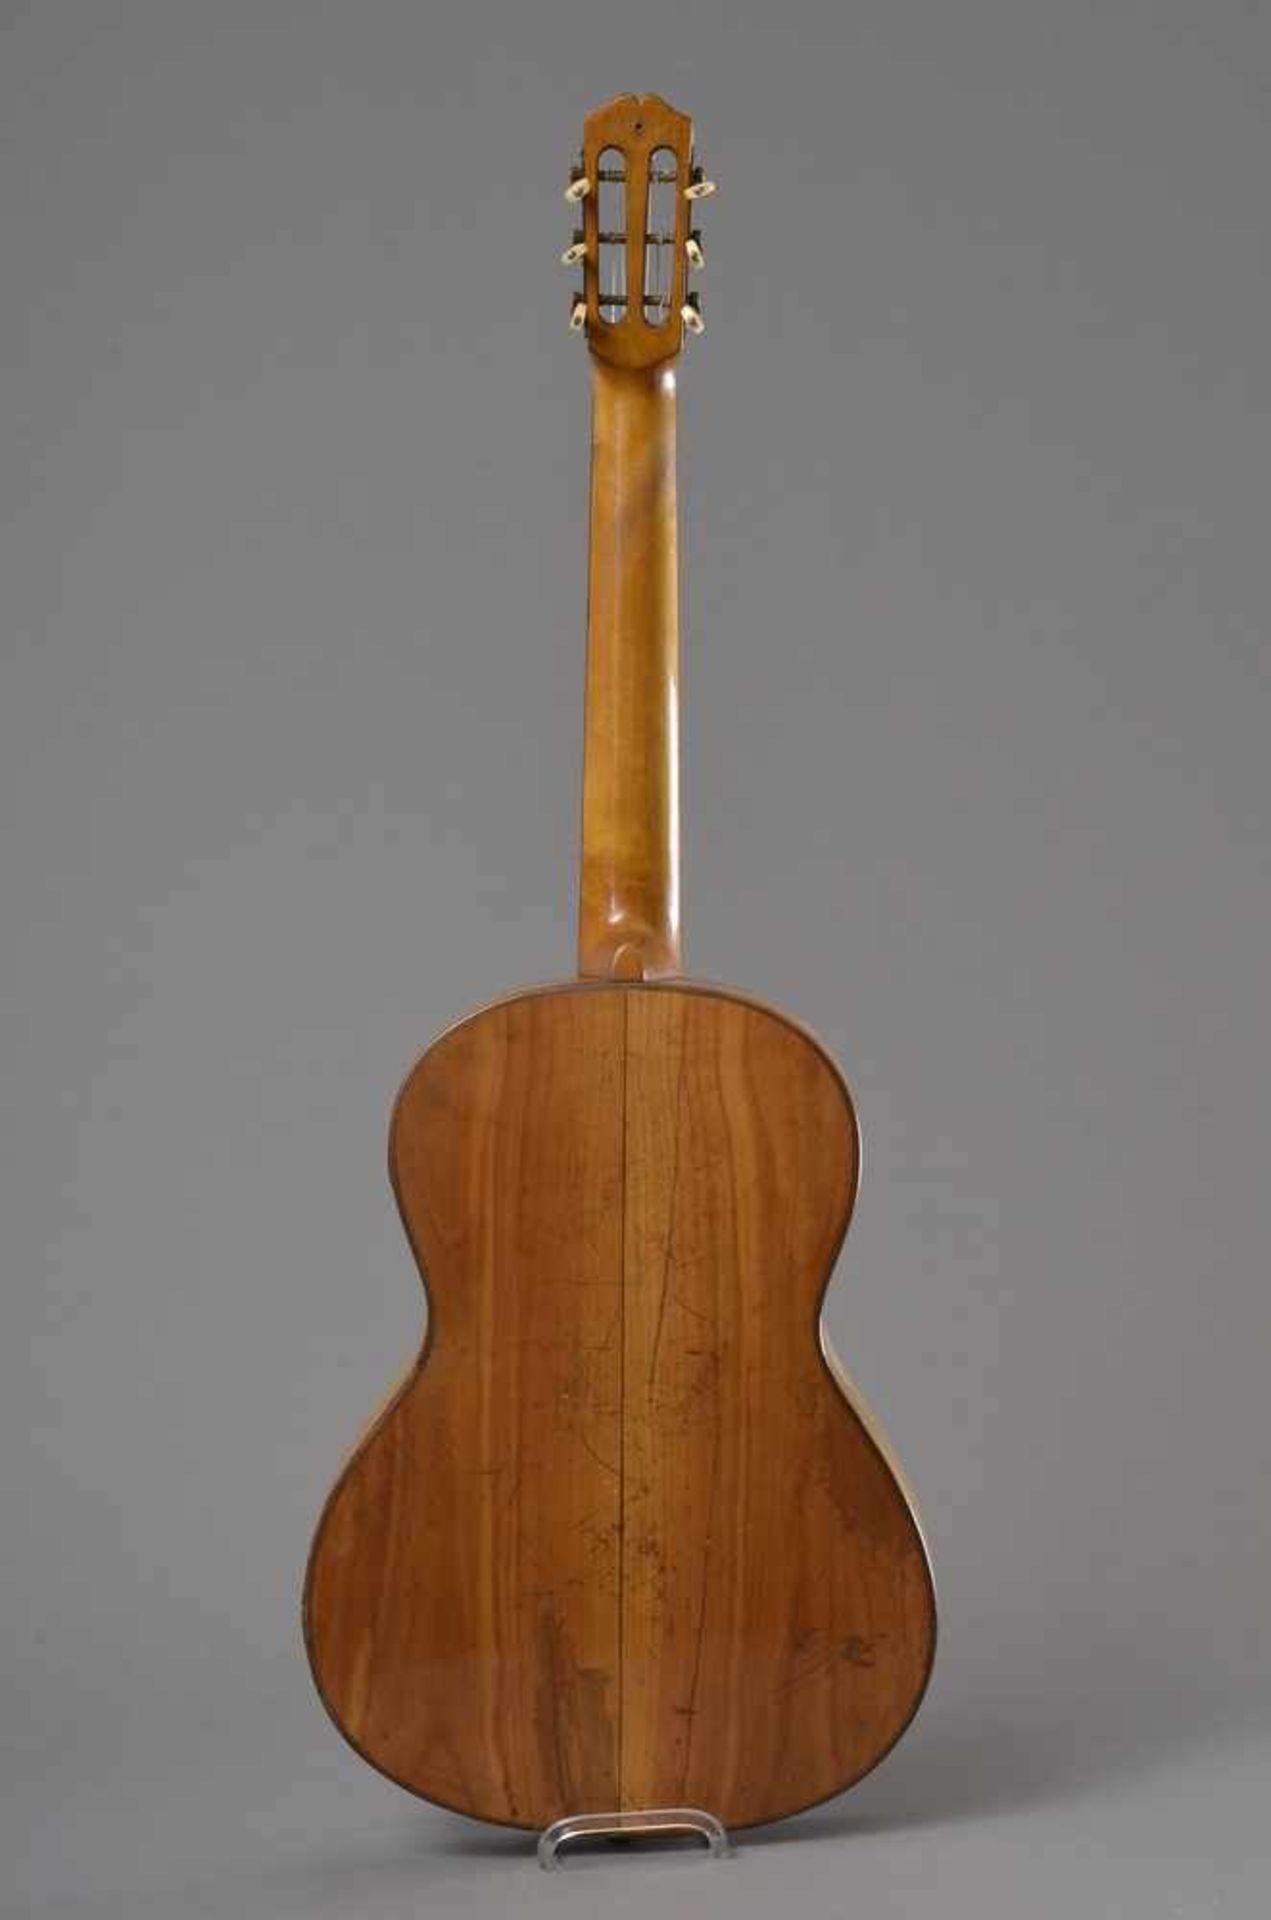 Historische Gitarre, Mensur 62cm, Gesamtlänge 93cm, Saitenhöhe 4mm, ca. 100 Jahre alt, spielbar - Image 2 of 8